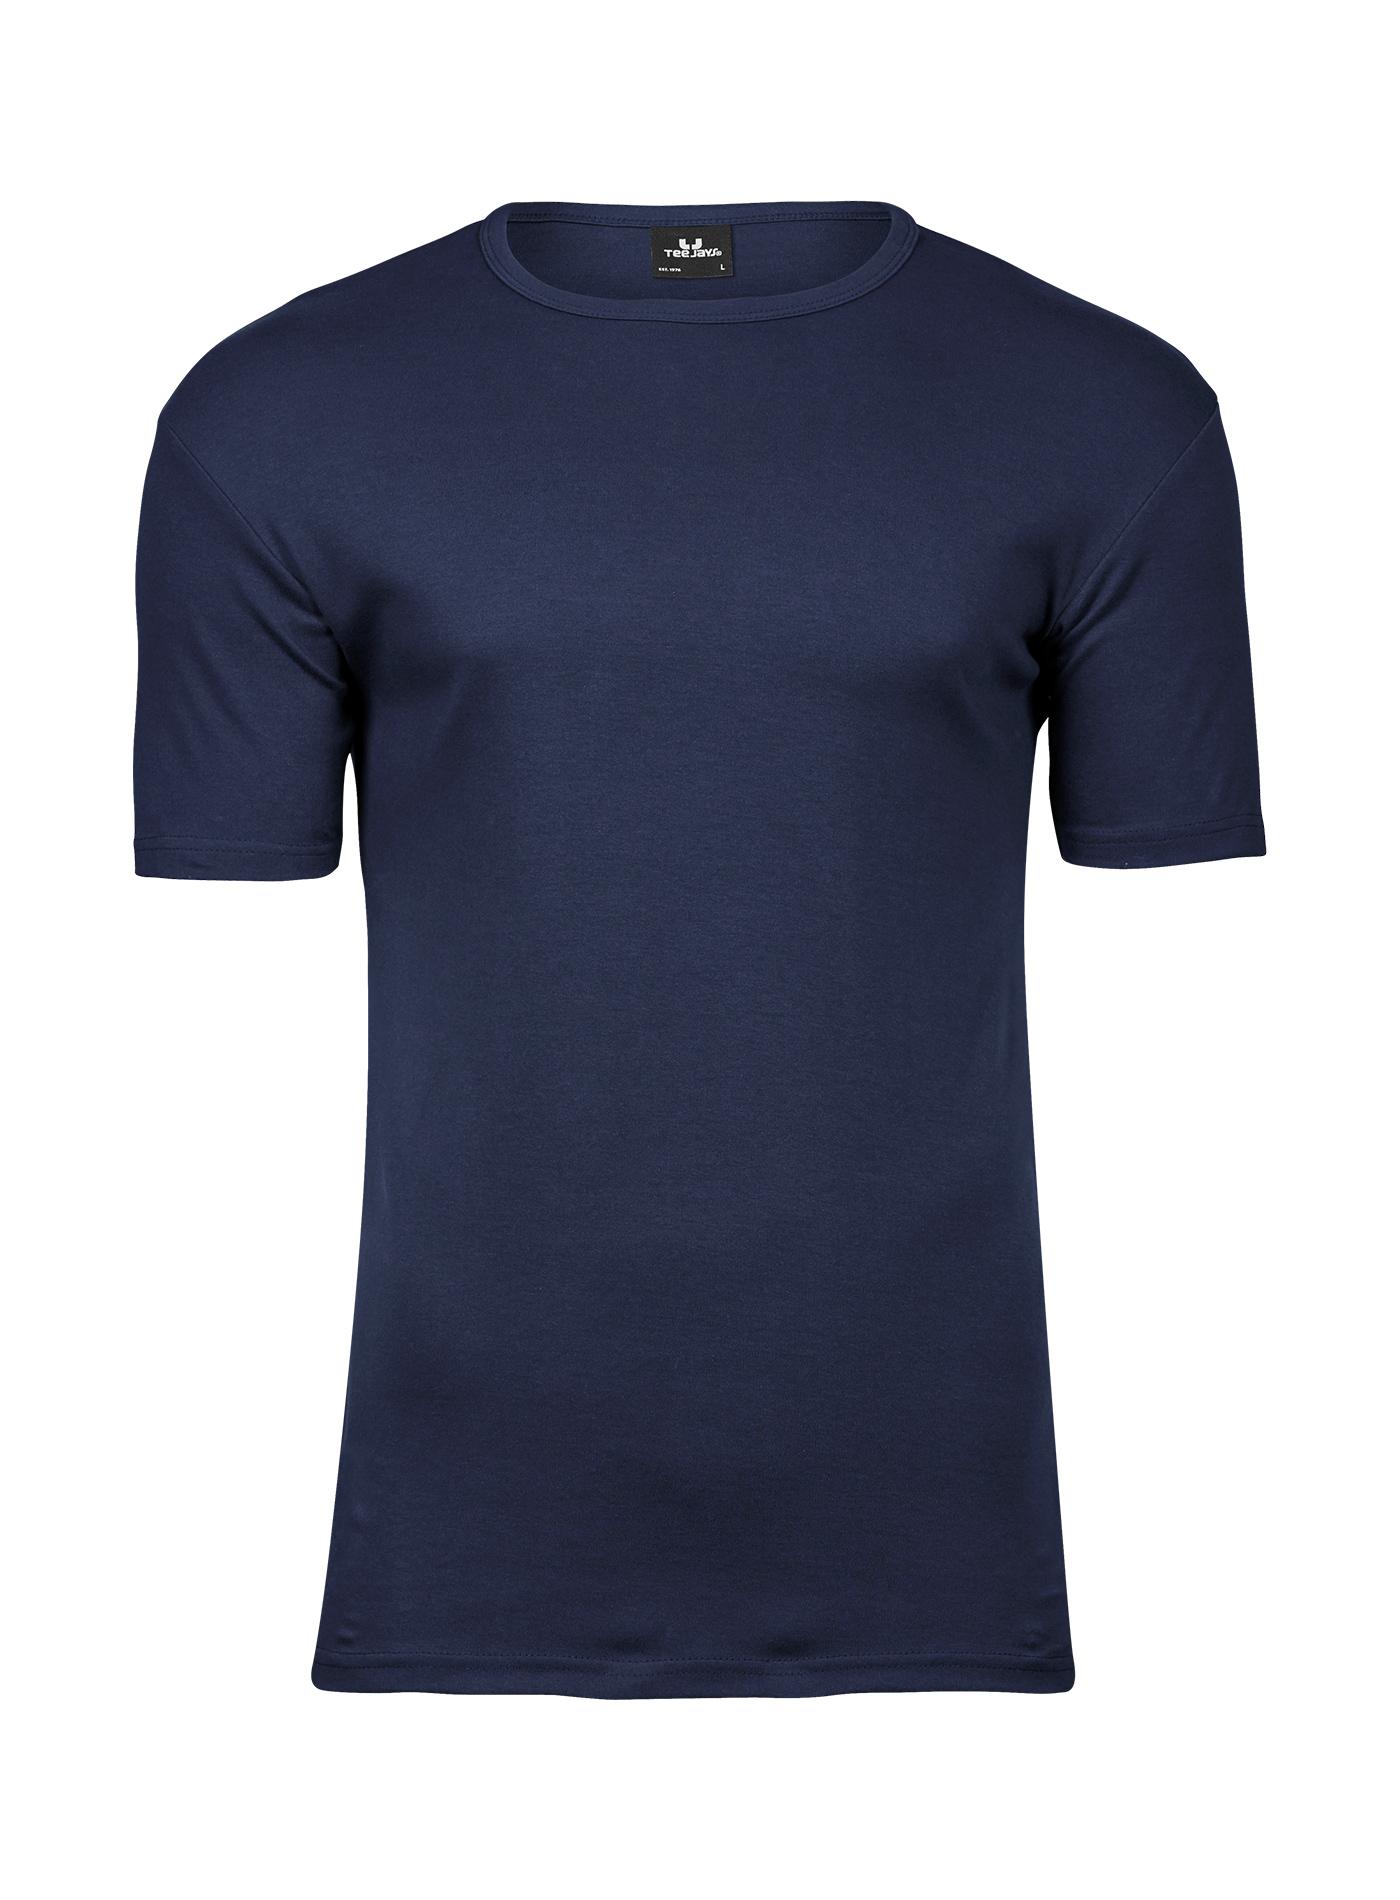 Silné bavlněné tričko Tee Jays Interlock - Námořní modrá L